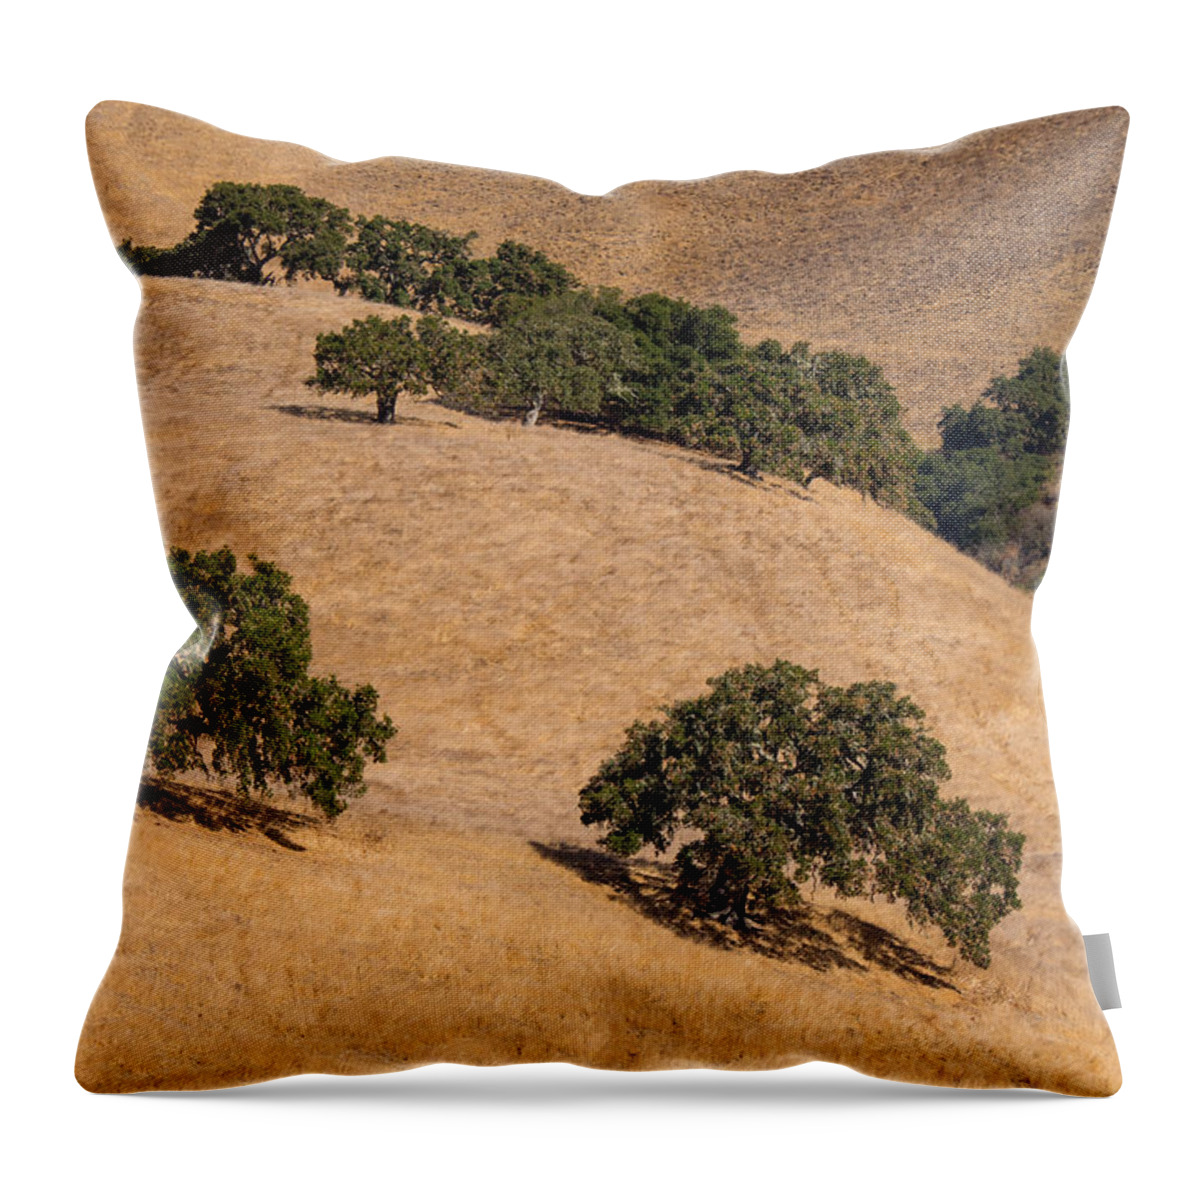 Carmel Valley Throw Pillow featuring the photograph Hillside Oaks by Derek Dean